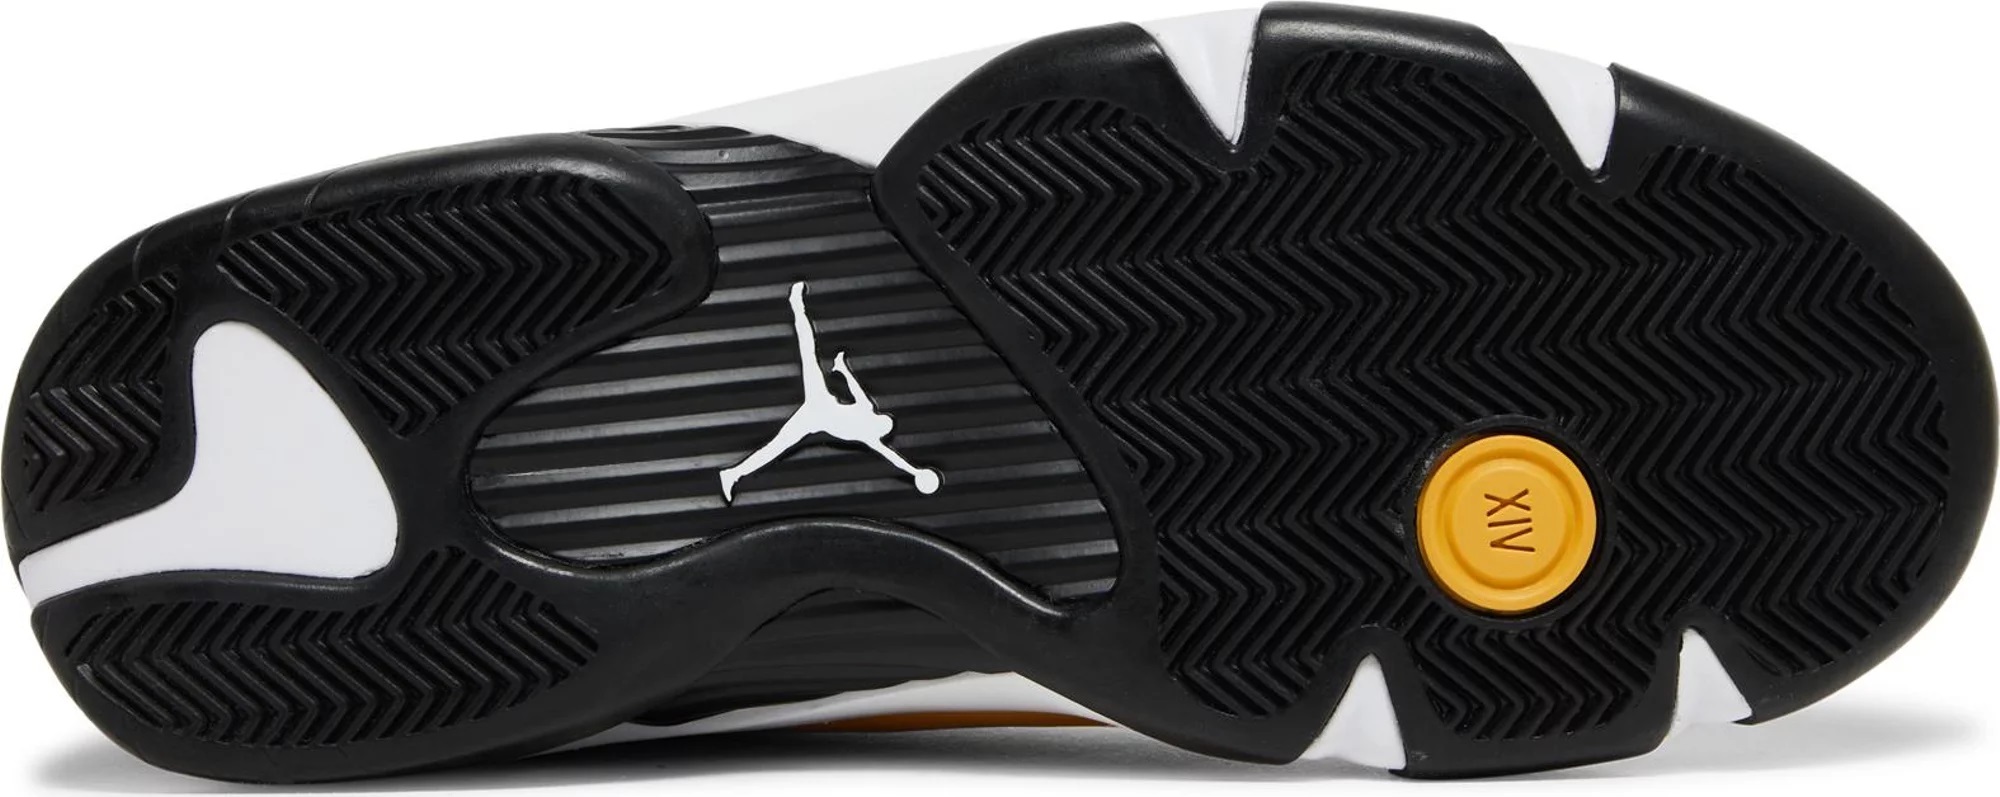 Air Jordan 14 Retro 'Ginger'